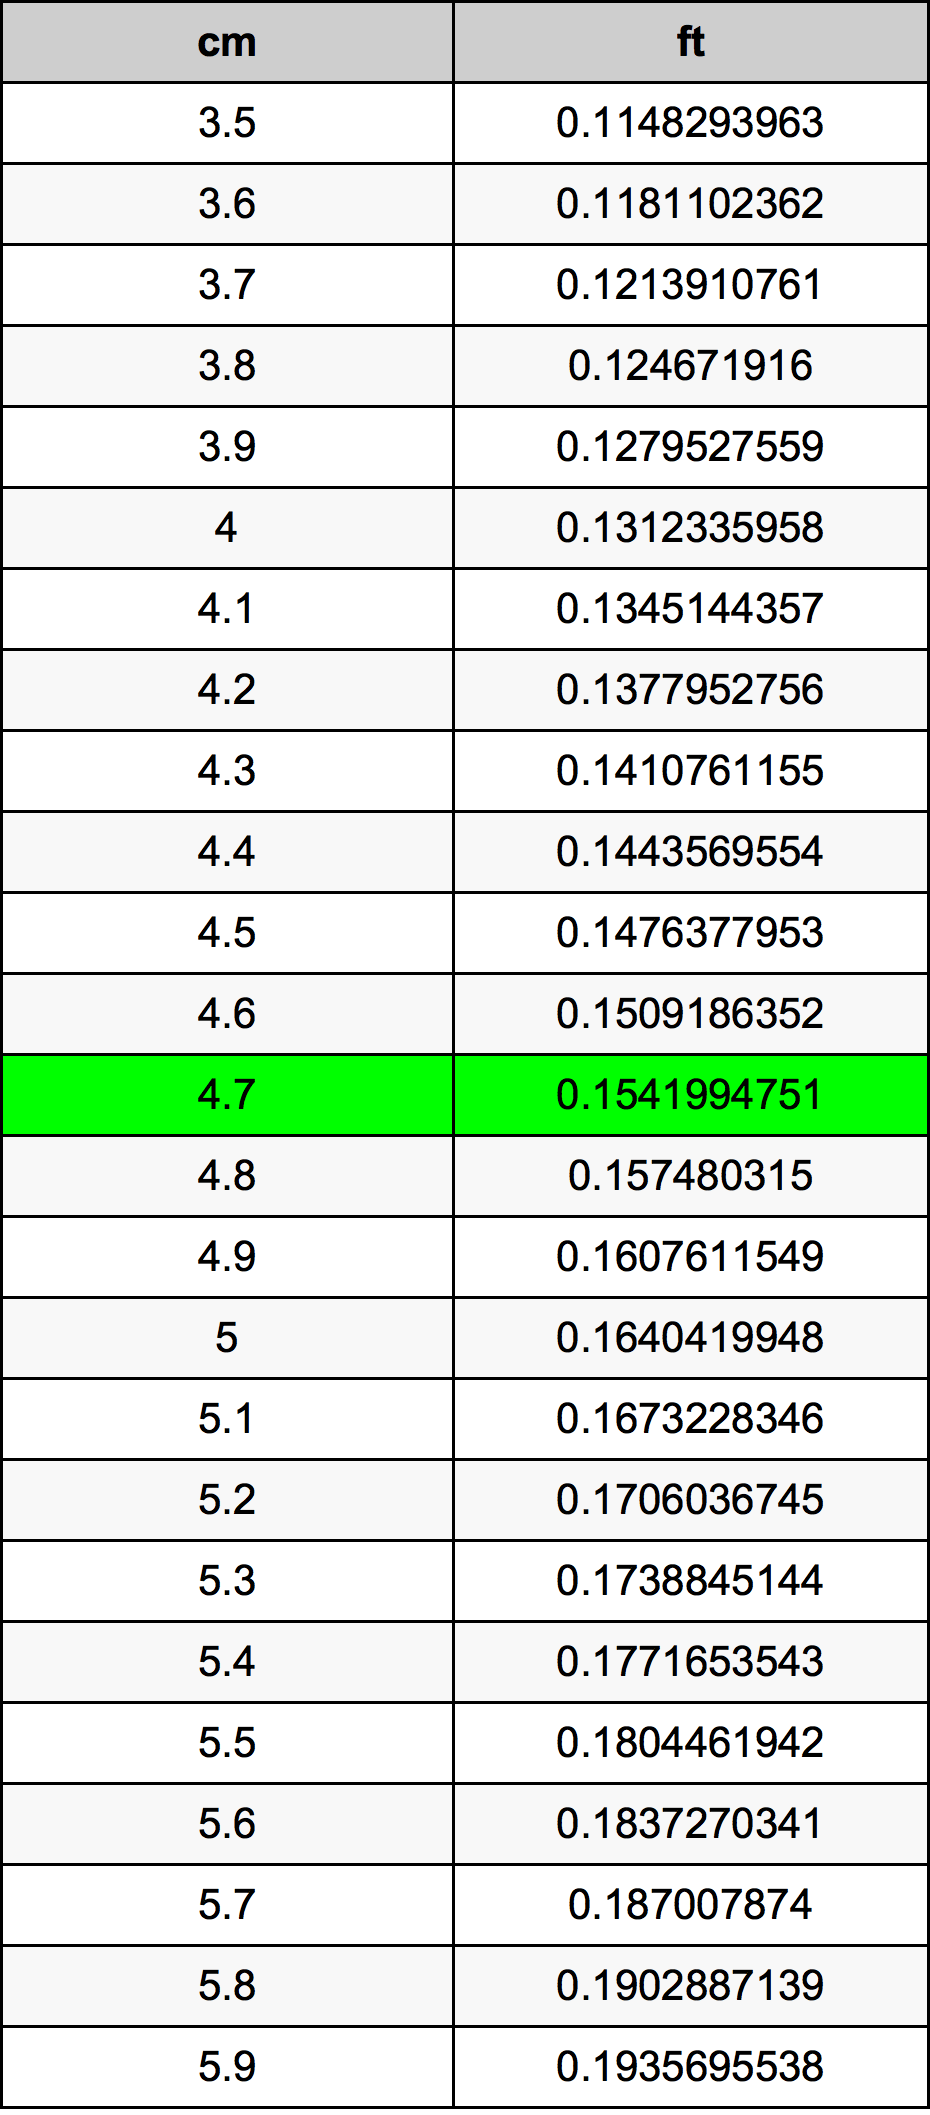 4.7 Centiméter átszámítási táblázat